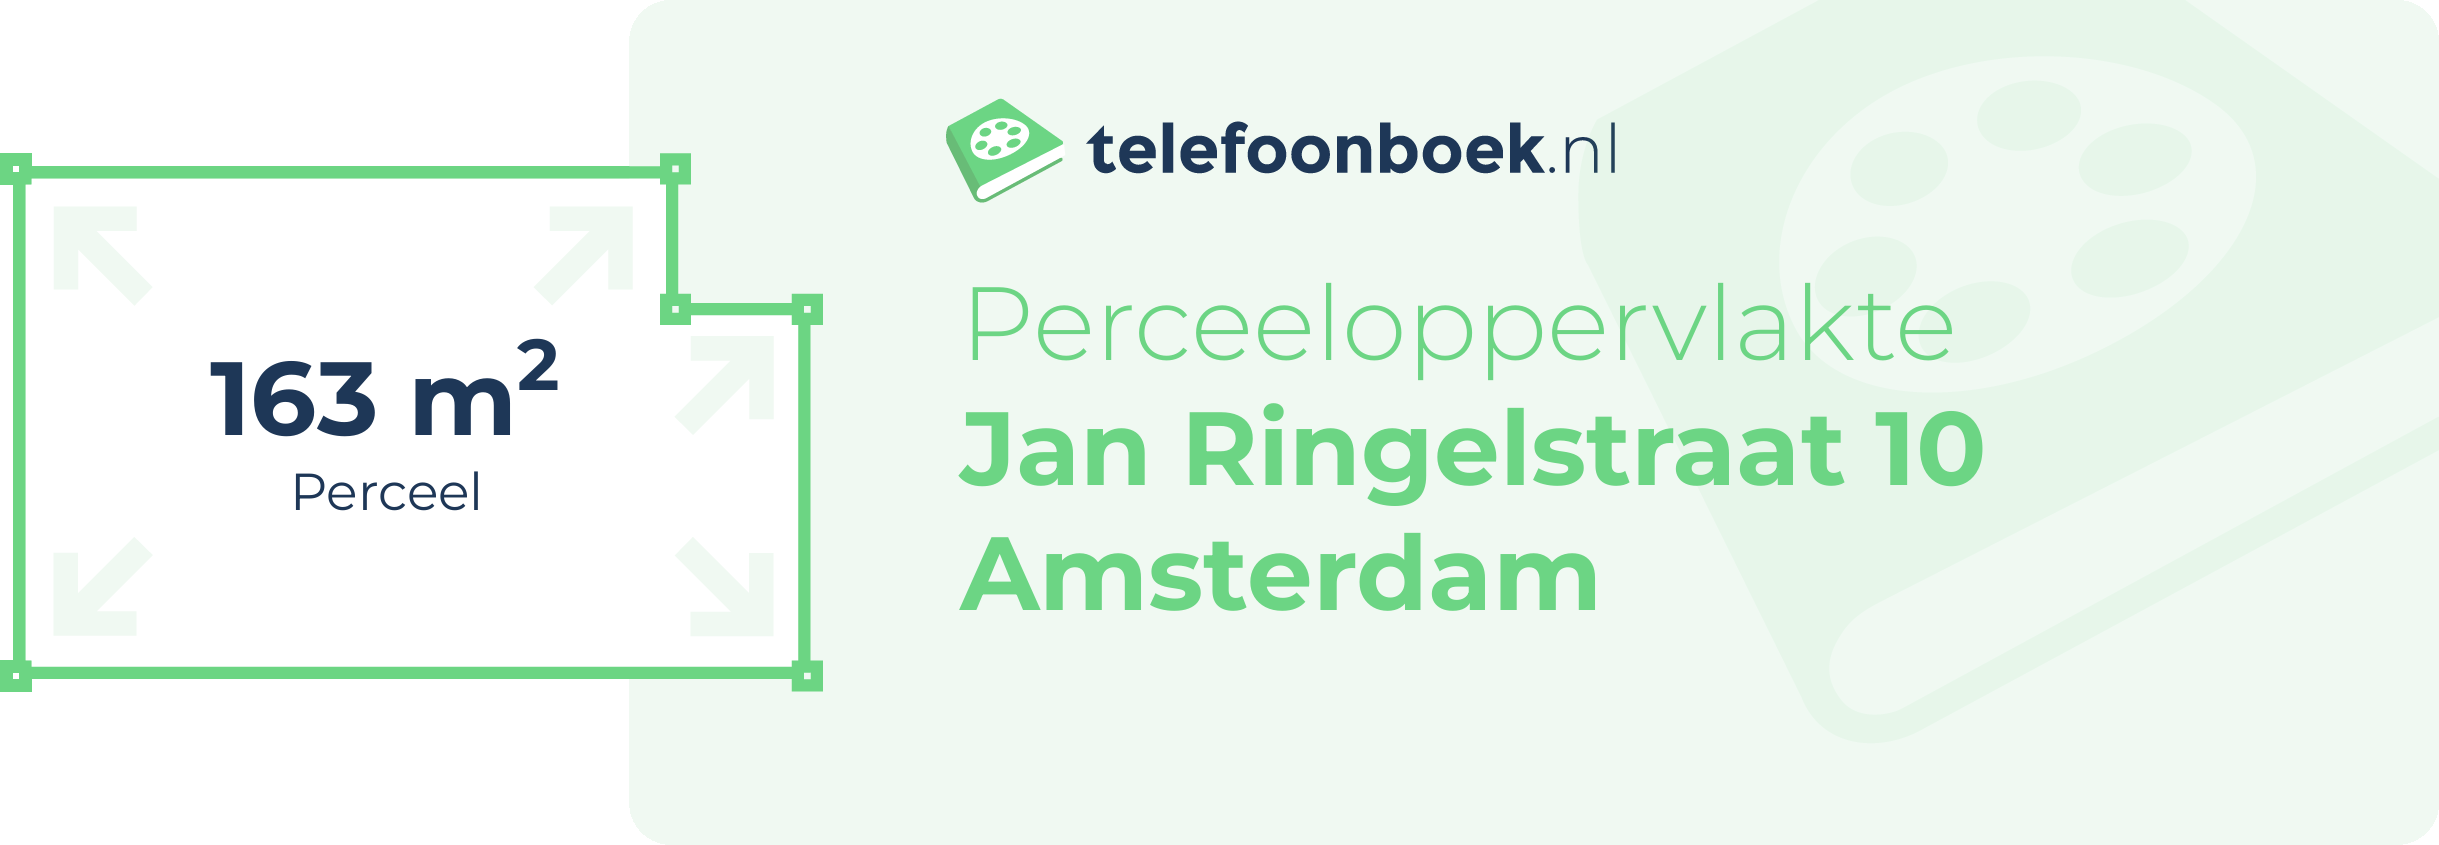 Perceeloppervlakte Jan Ringelstraat 10 Amsterdam